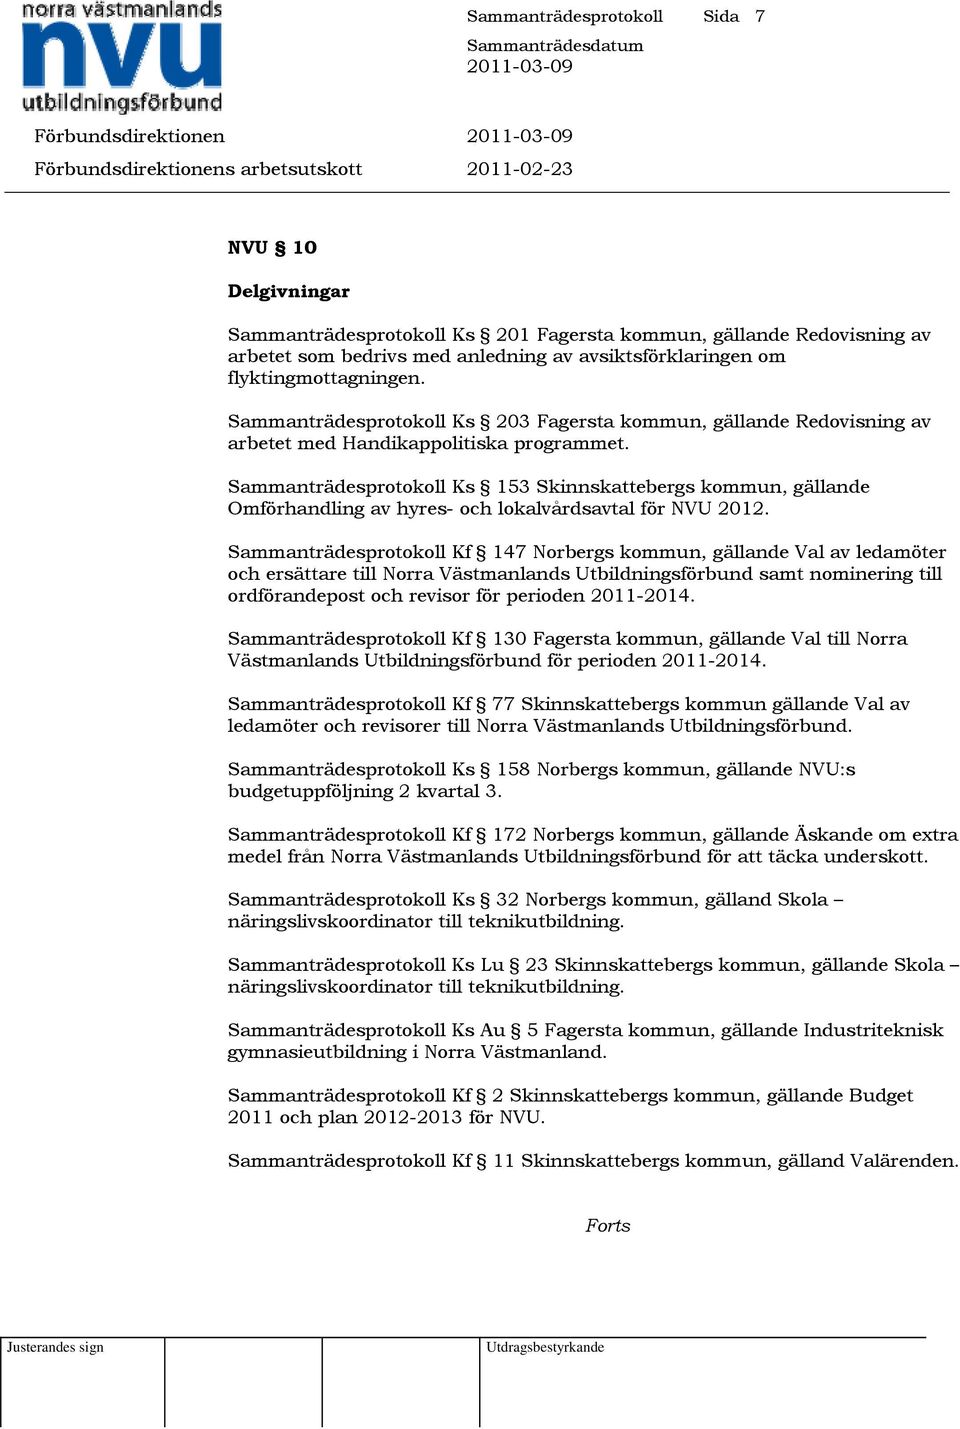 Sammanträdesprotokoll Ks 153 Skinnskattebergs kommun, gällande Omförhandling av hyres- och lokalvårdsavtal för NVU 2012.